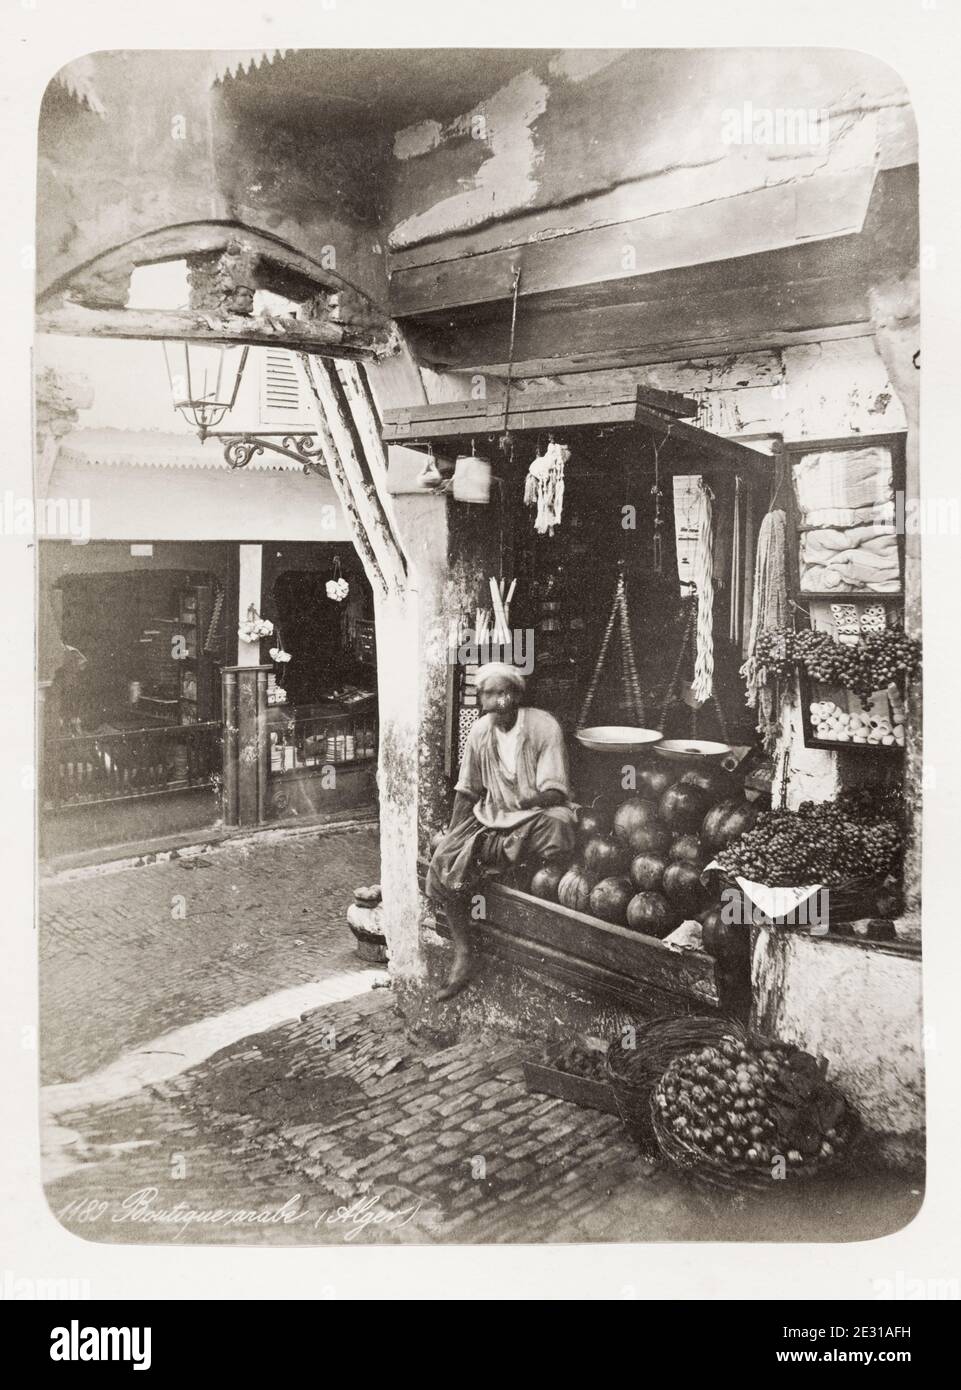 Photo du XIXe siècle : boutique avec un homme arabe, probablement Alger, Algérie. Banque D'Images